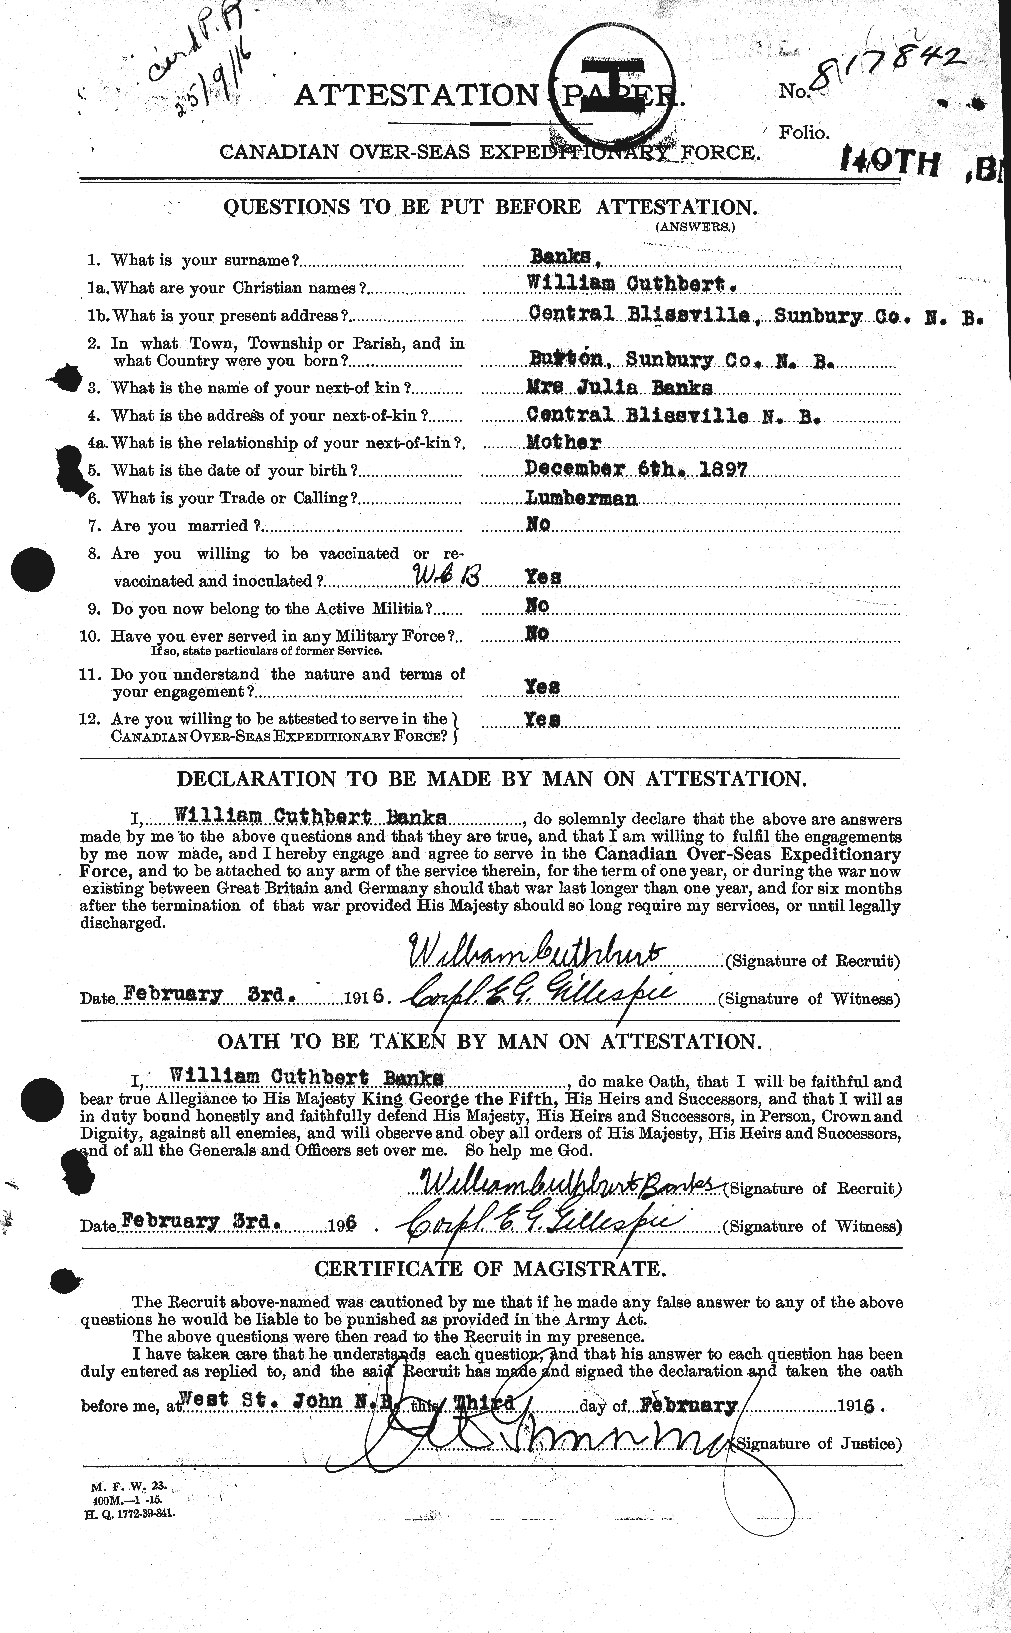 Dossiers du Personnel de la Première Guerre mondiale - CEC 224921a